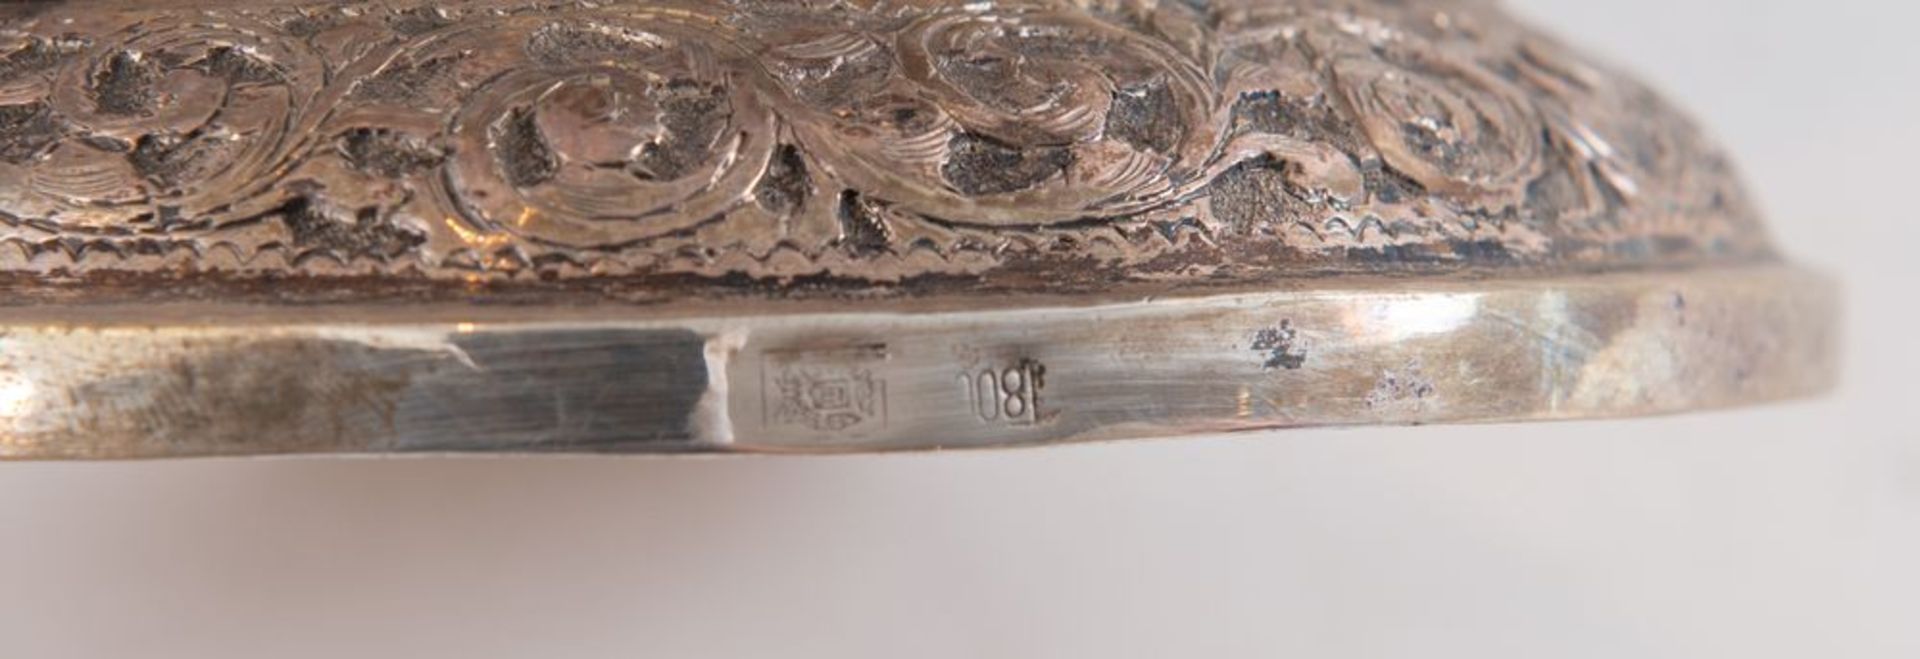 Alzata in argento 800. Sul bordo inferiore reca punzoni: 800, probabile stemma dell'argentiere. Cm 2 - Bild 3 aus 3